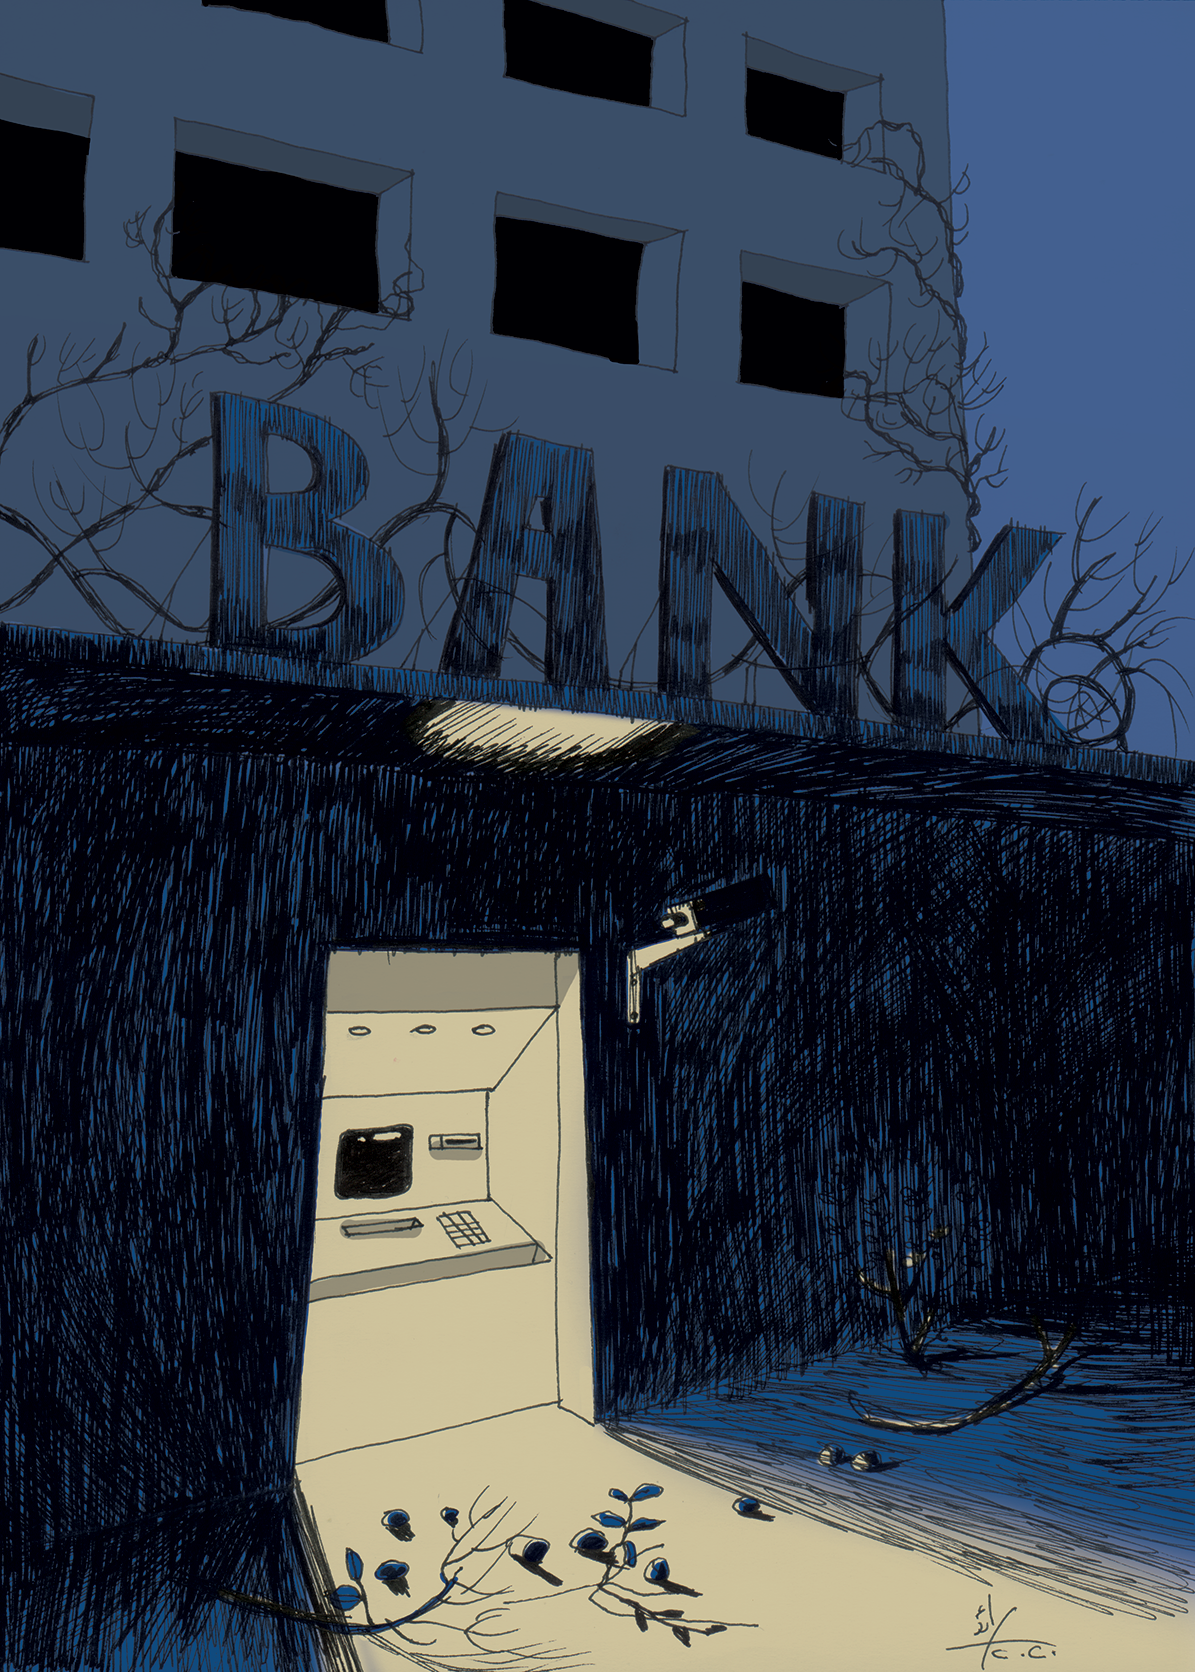 لقاء مع توفيق كسبار: مضبطة اتهام بحق سياسة المصرف المركزي النقدية والمصارف